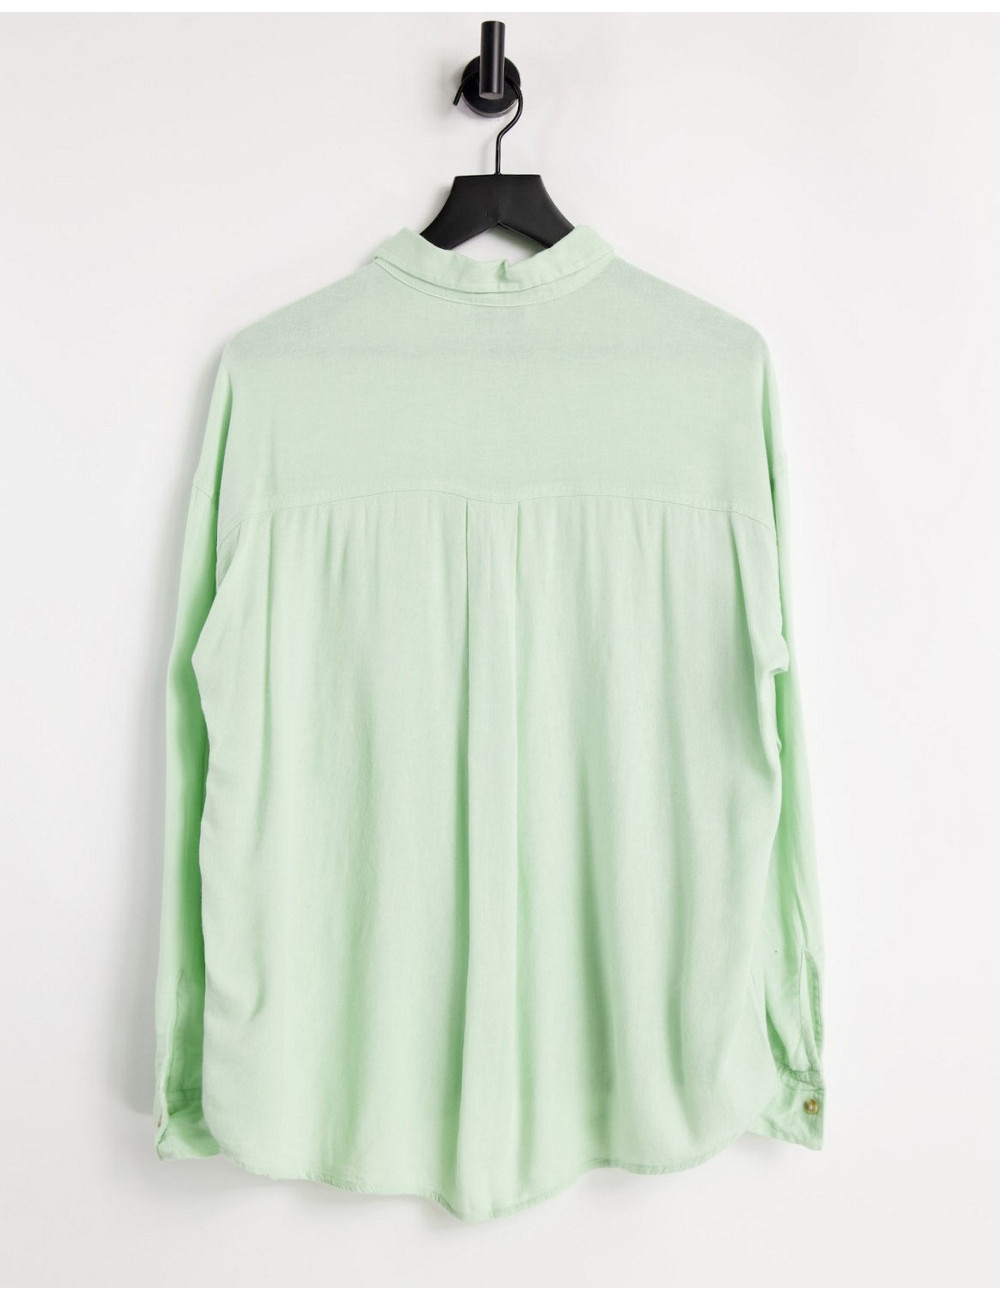 Hollister linen shirt in green